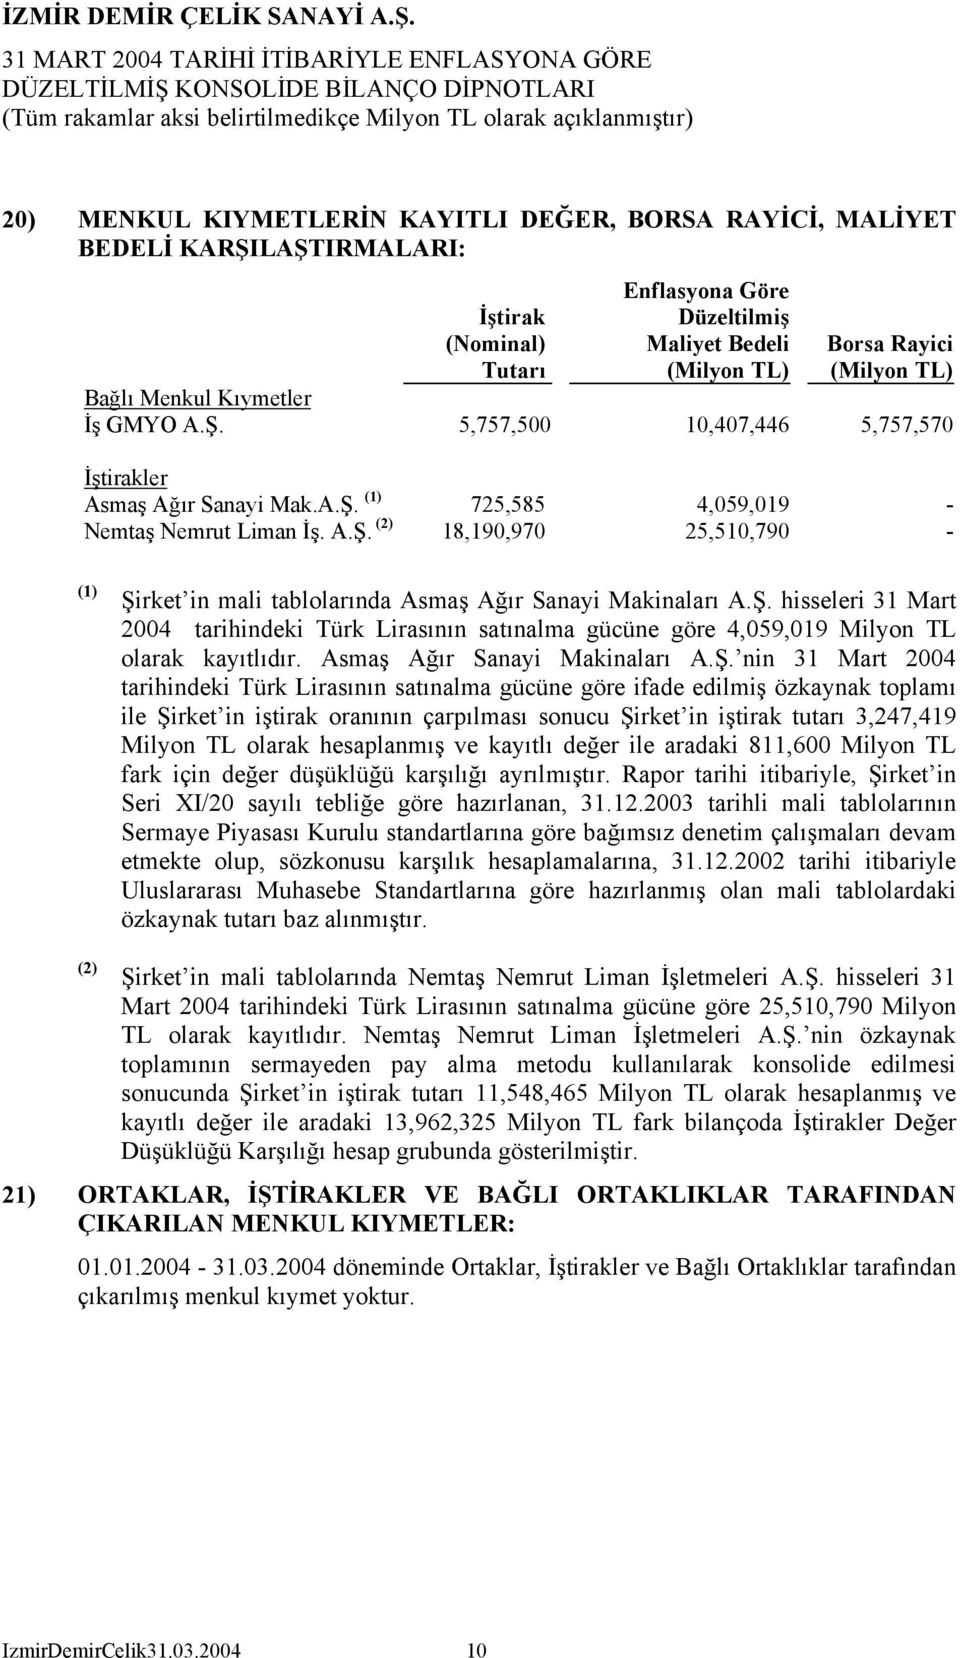 Ş. hisseleri 31 Mart 2004 tarihindeki Türk Lirasının satınalma gücüne göre 4,059,019 Milyon TL olarak kayıtlıdır. Asmaş Ağır Sanayi Makinaları A.Ş. nin 31 Mart 2004 tarihindeki Türk Lirasının